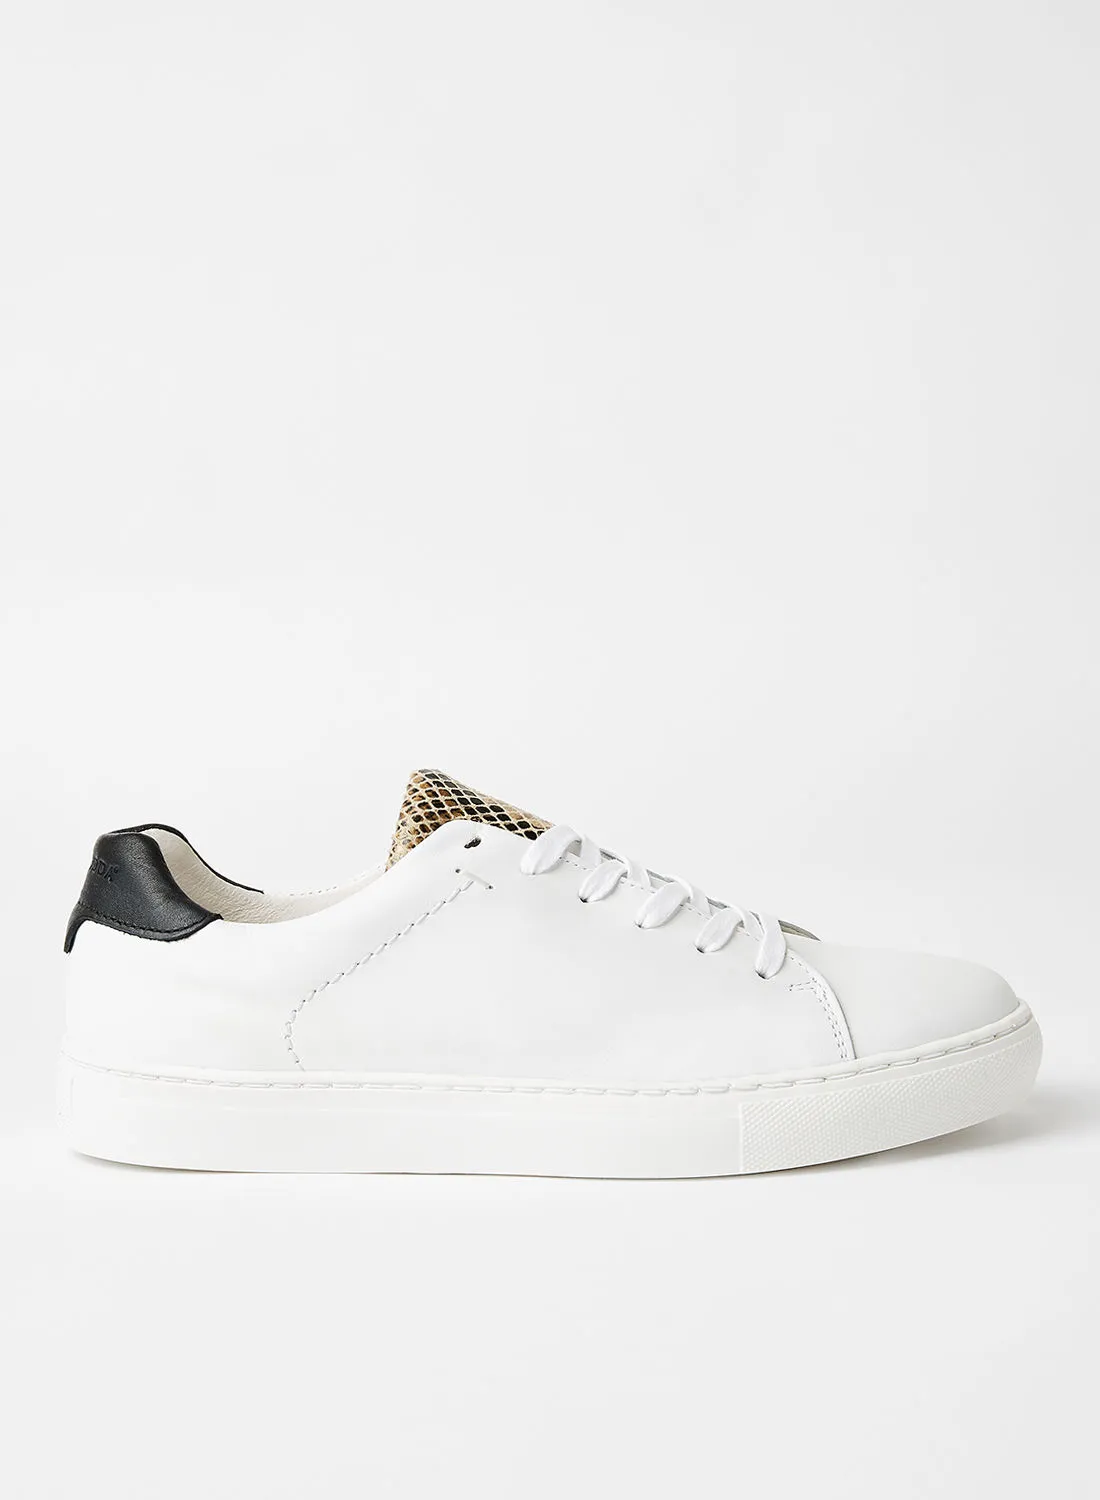 VERO MODA Tuella Leather Sneakers White